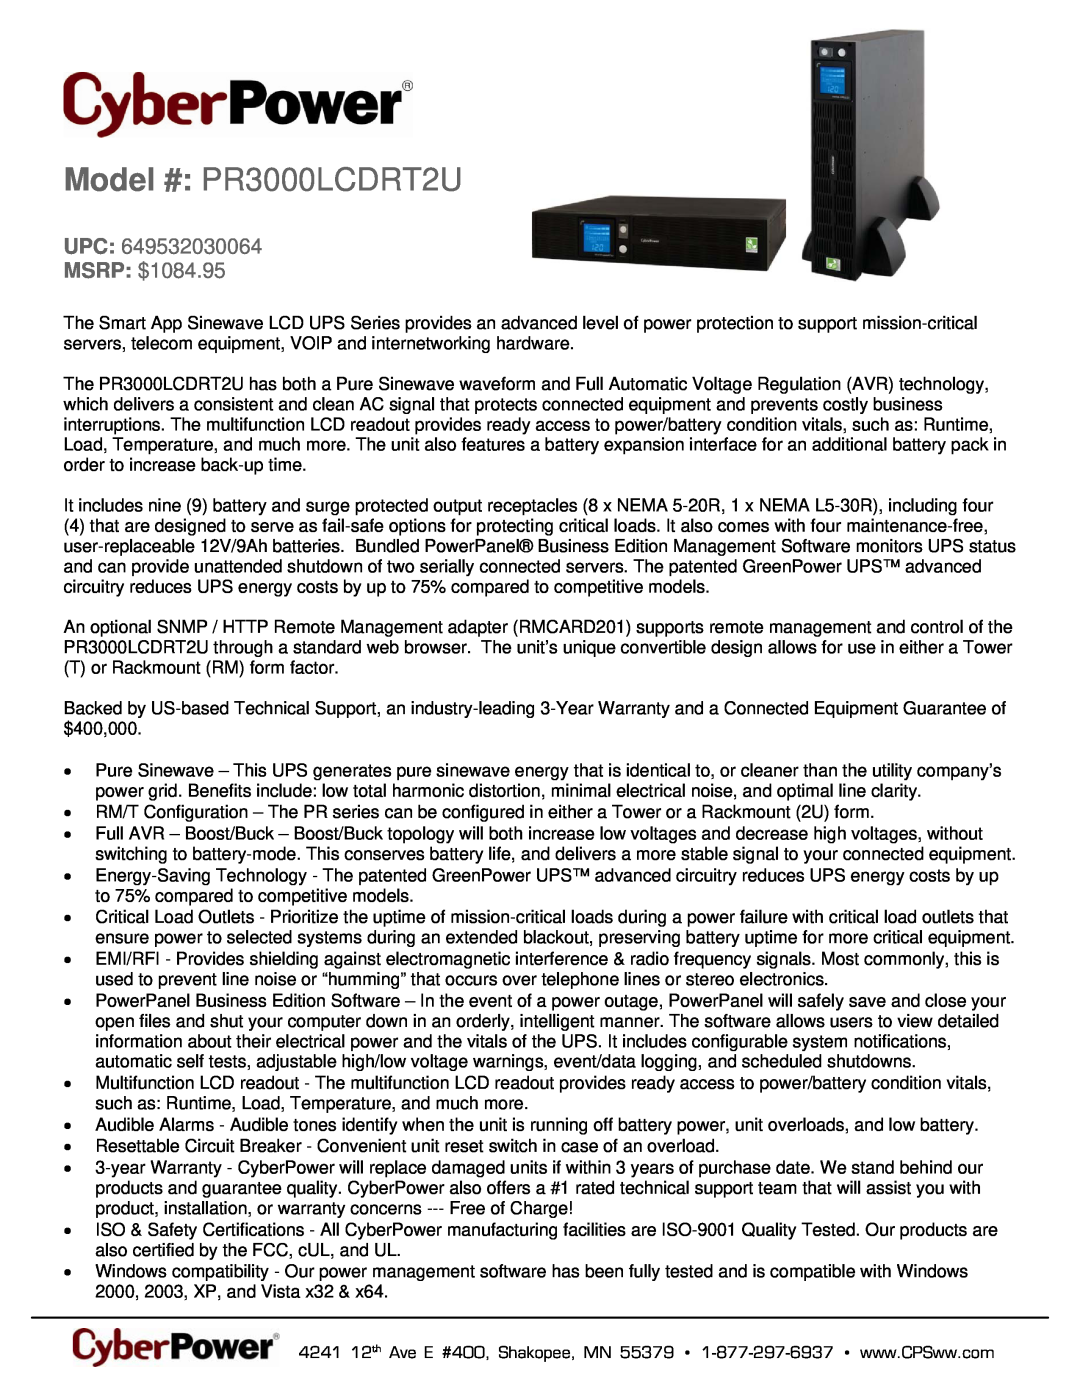 CyberPower Systems 649532030064 warranty Model # PR3000LCDRT2U, UPC MSRP $1084.95 